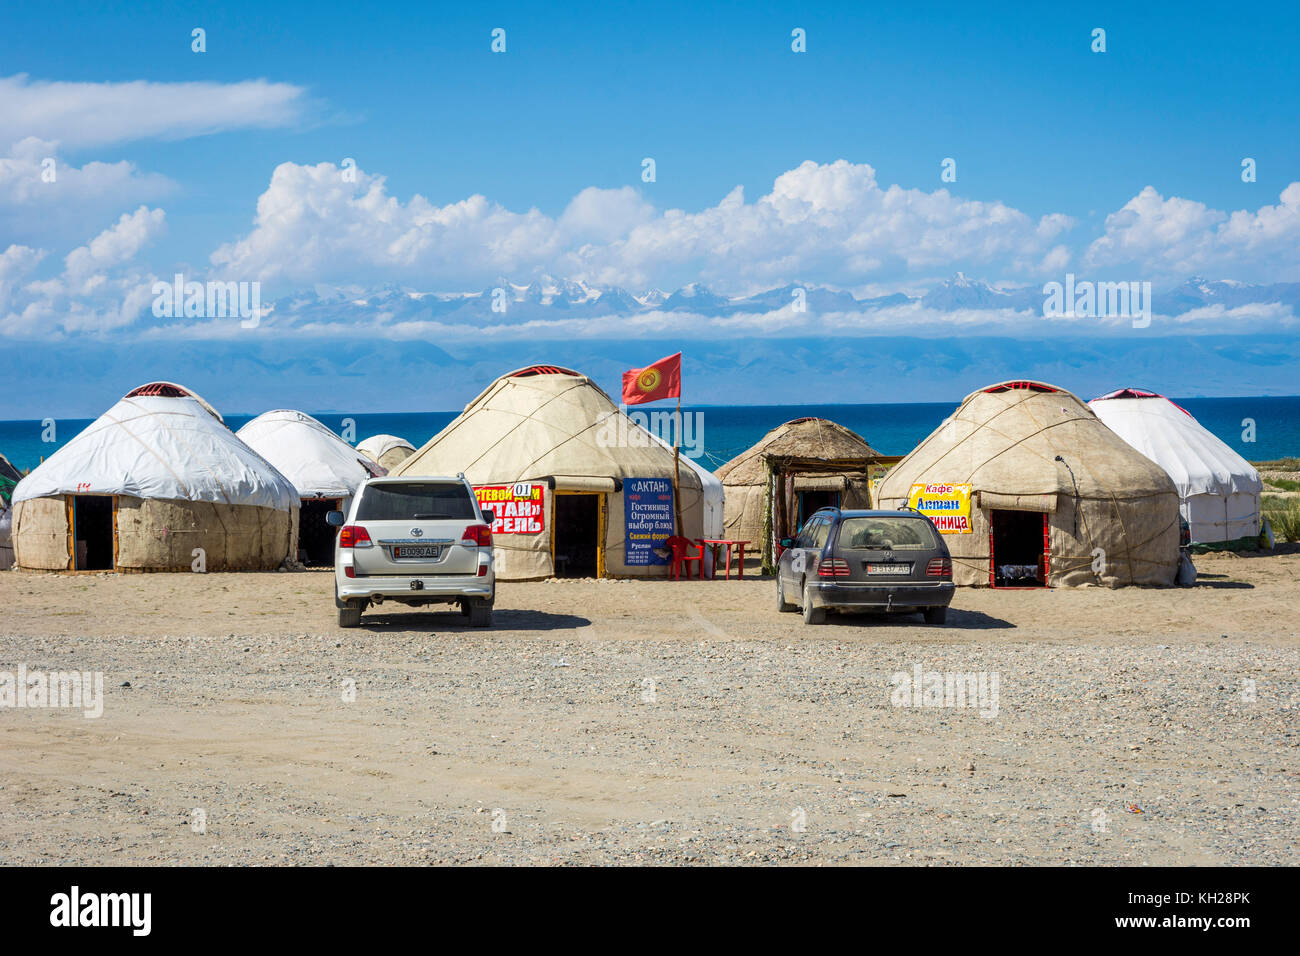 KYZYL TAMBIÉN, KIRGUISTÁN - 8 DE AGOSTO: Yurts junto al lago Karakol con la publicidad para los proveedores de datos móviles locales. Agosto de 2016 Foto de stock